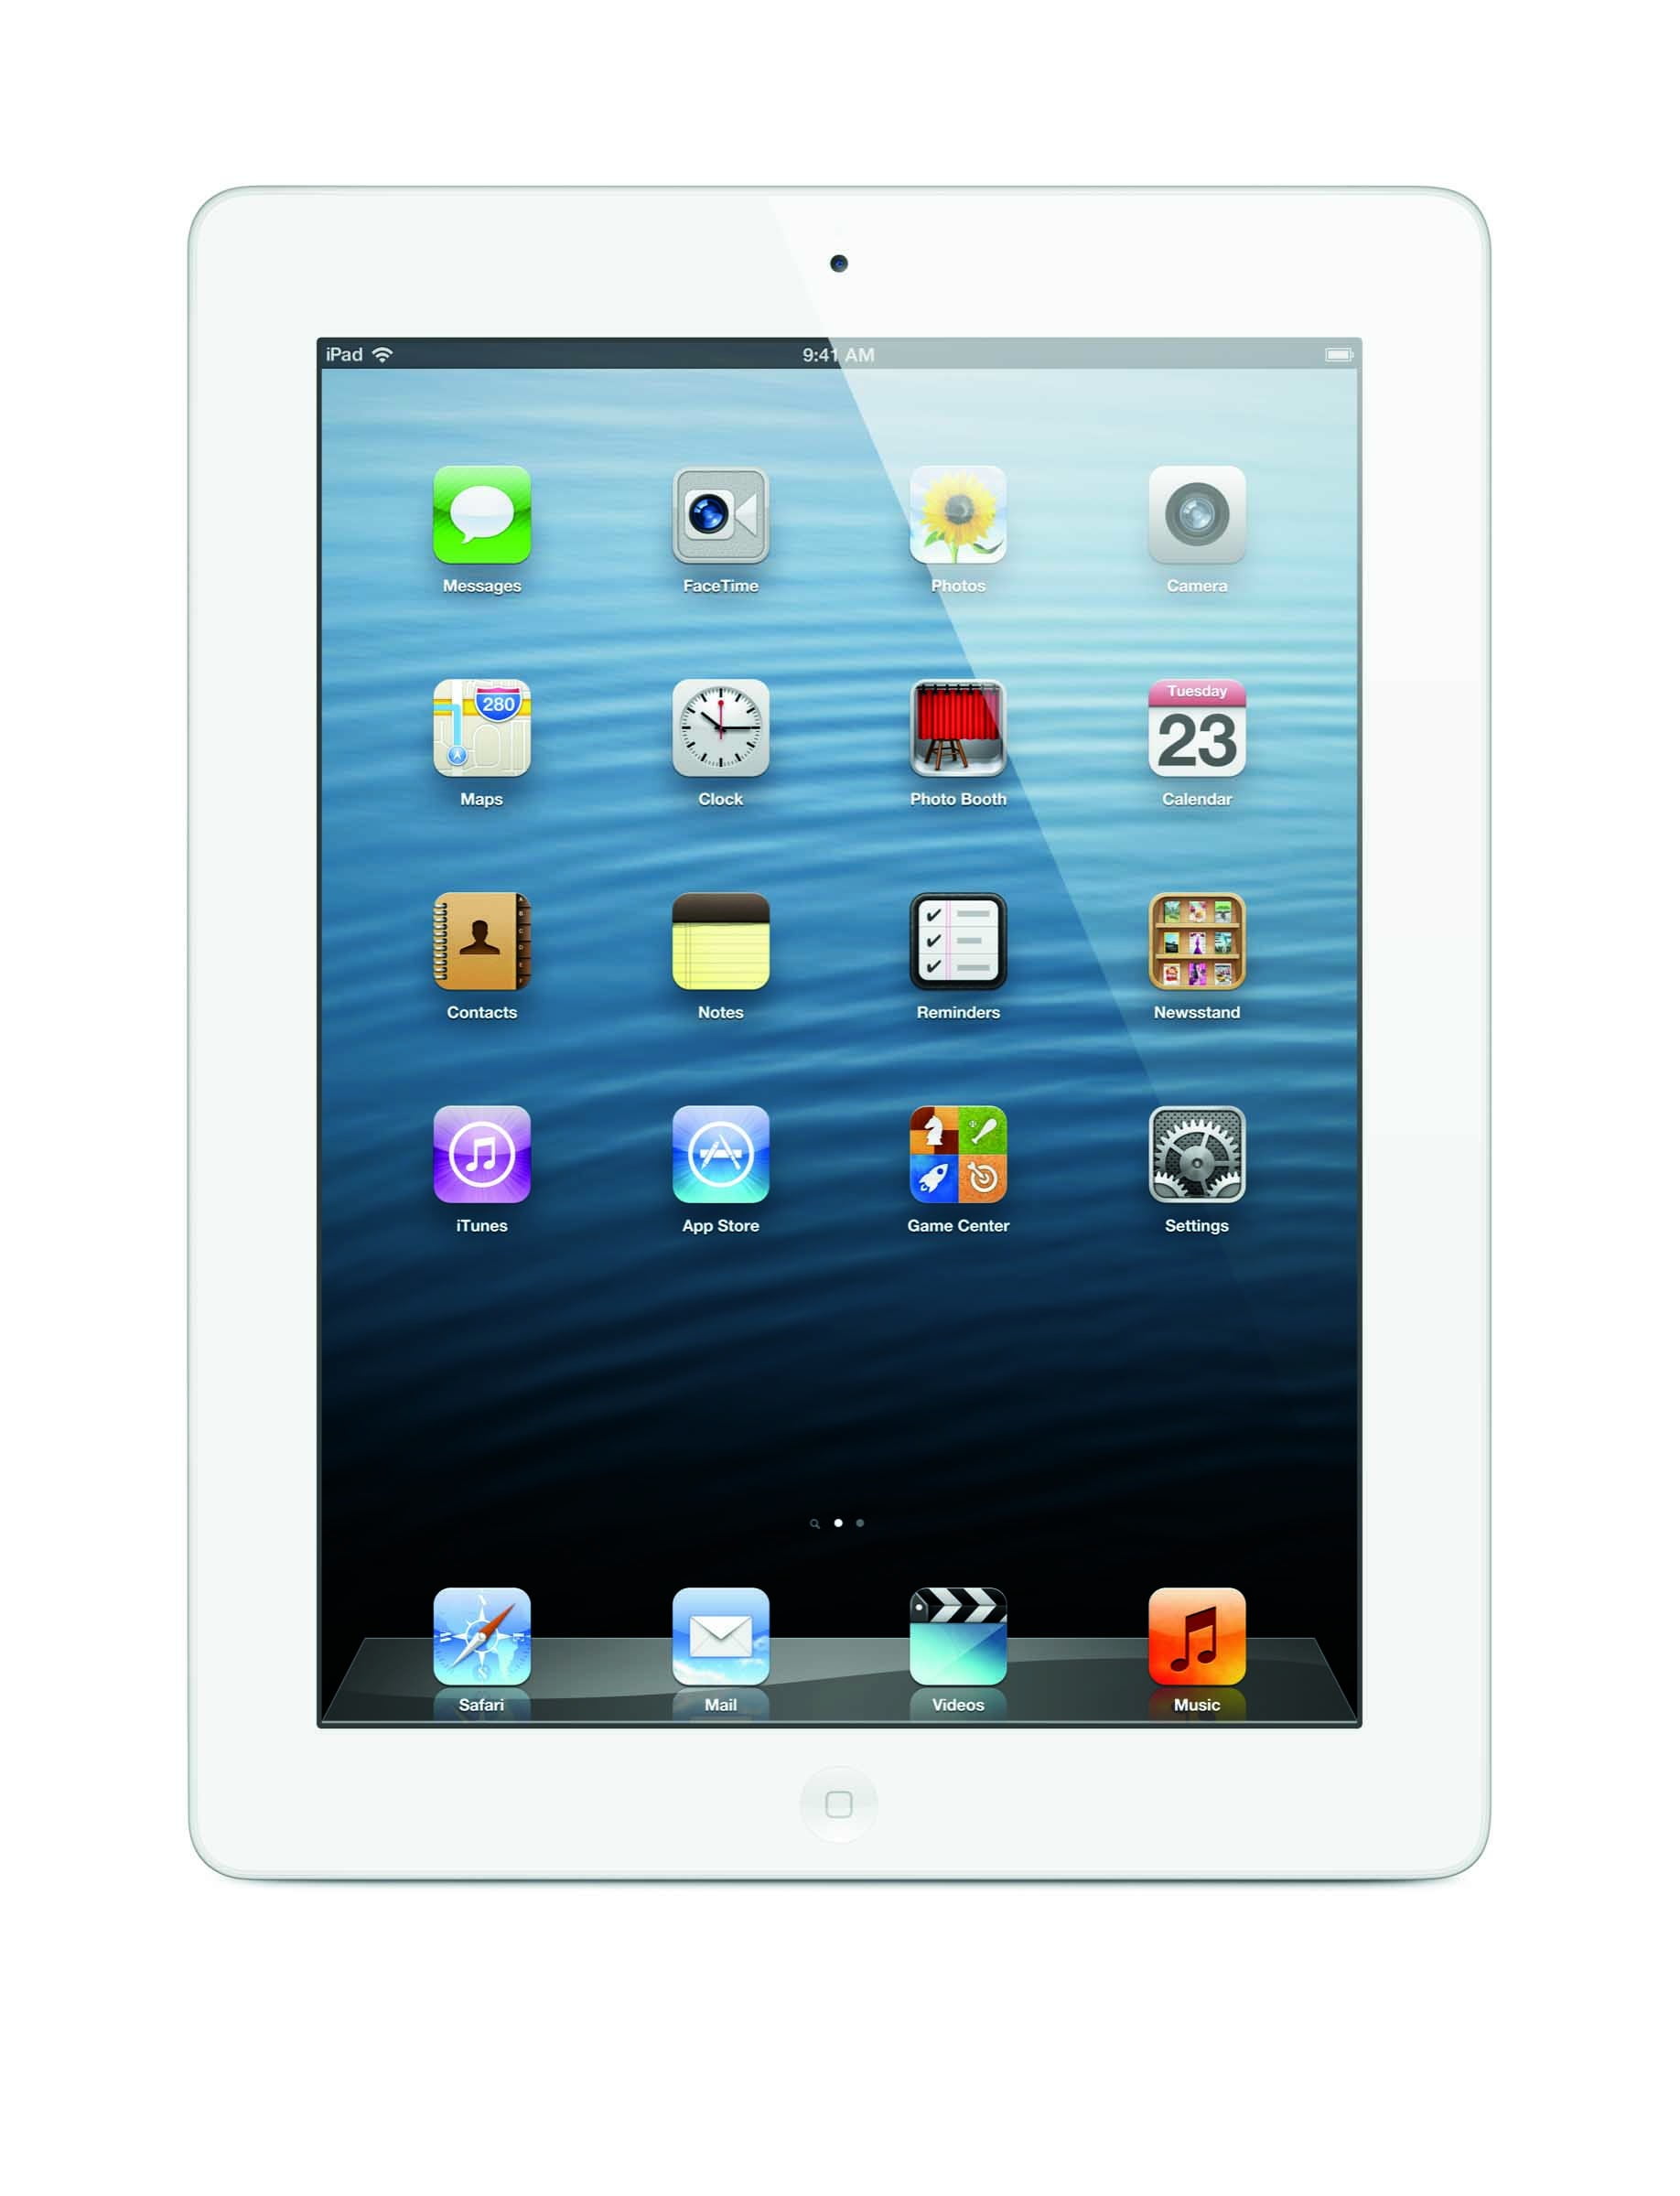 7€50 sur Apple iPad Air 2 Wi-Fi - 2e génération - tablette - 64 Go